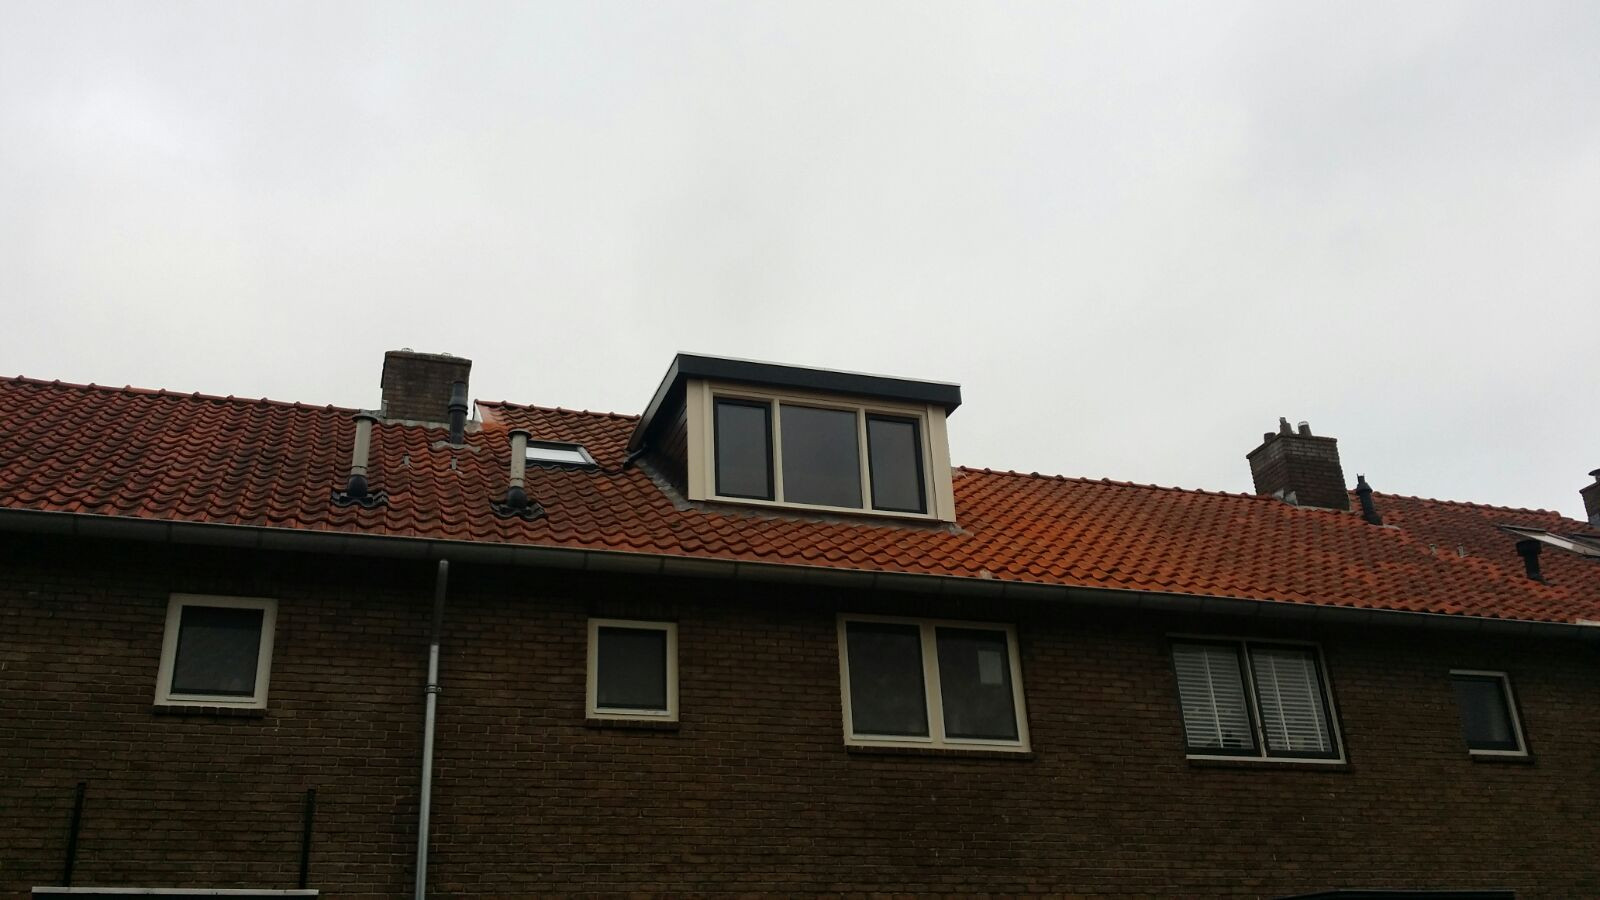 Bussum dakkapel op dak geïnstalleerd eindresultaat.